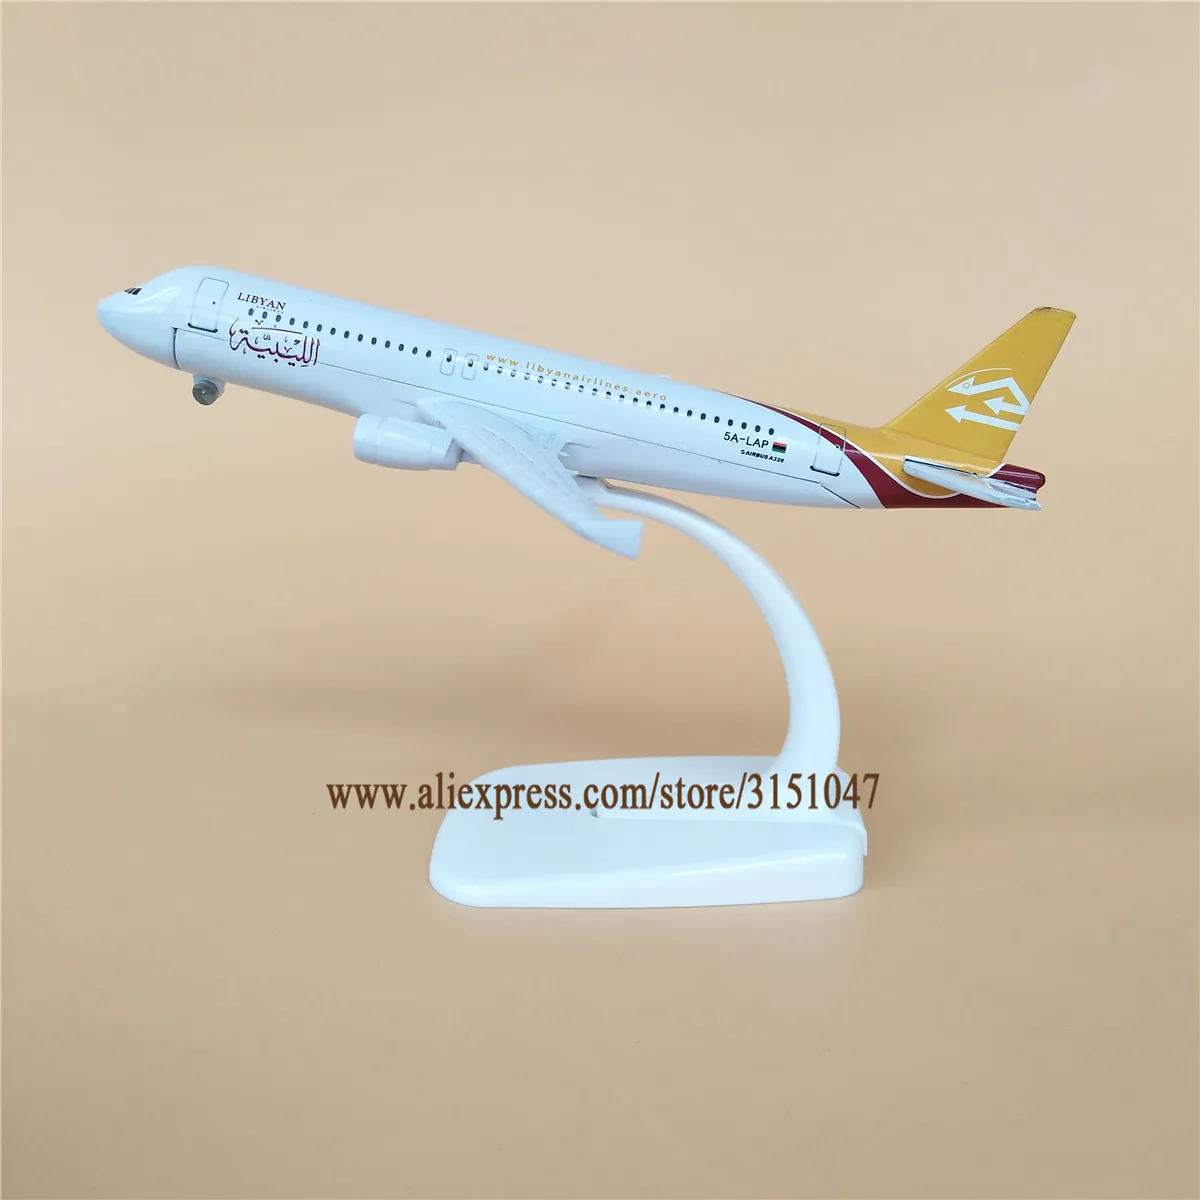 NUEVA Aleación de Metal Aérea de LIBIA Airlines, Avión Modelo Airbus 320 A320 Airways Modelo de Avión Stand de la Aeronave a los Niños los Regalos de 16cm 3